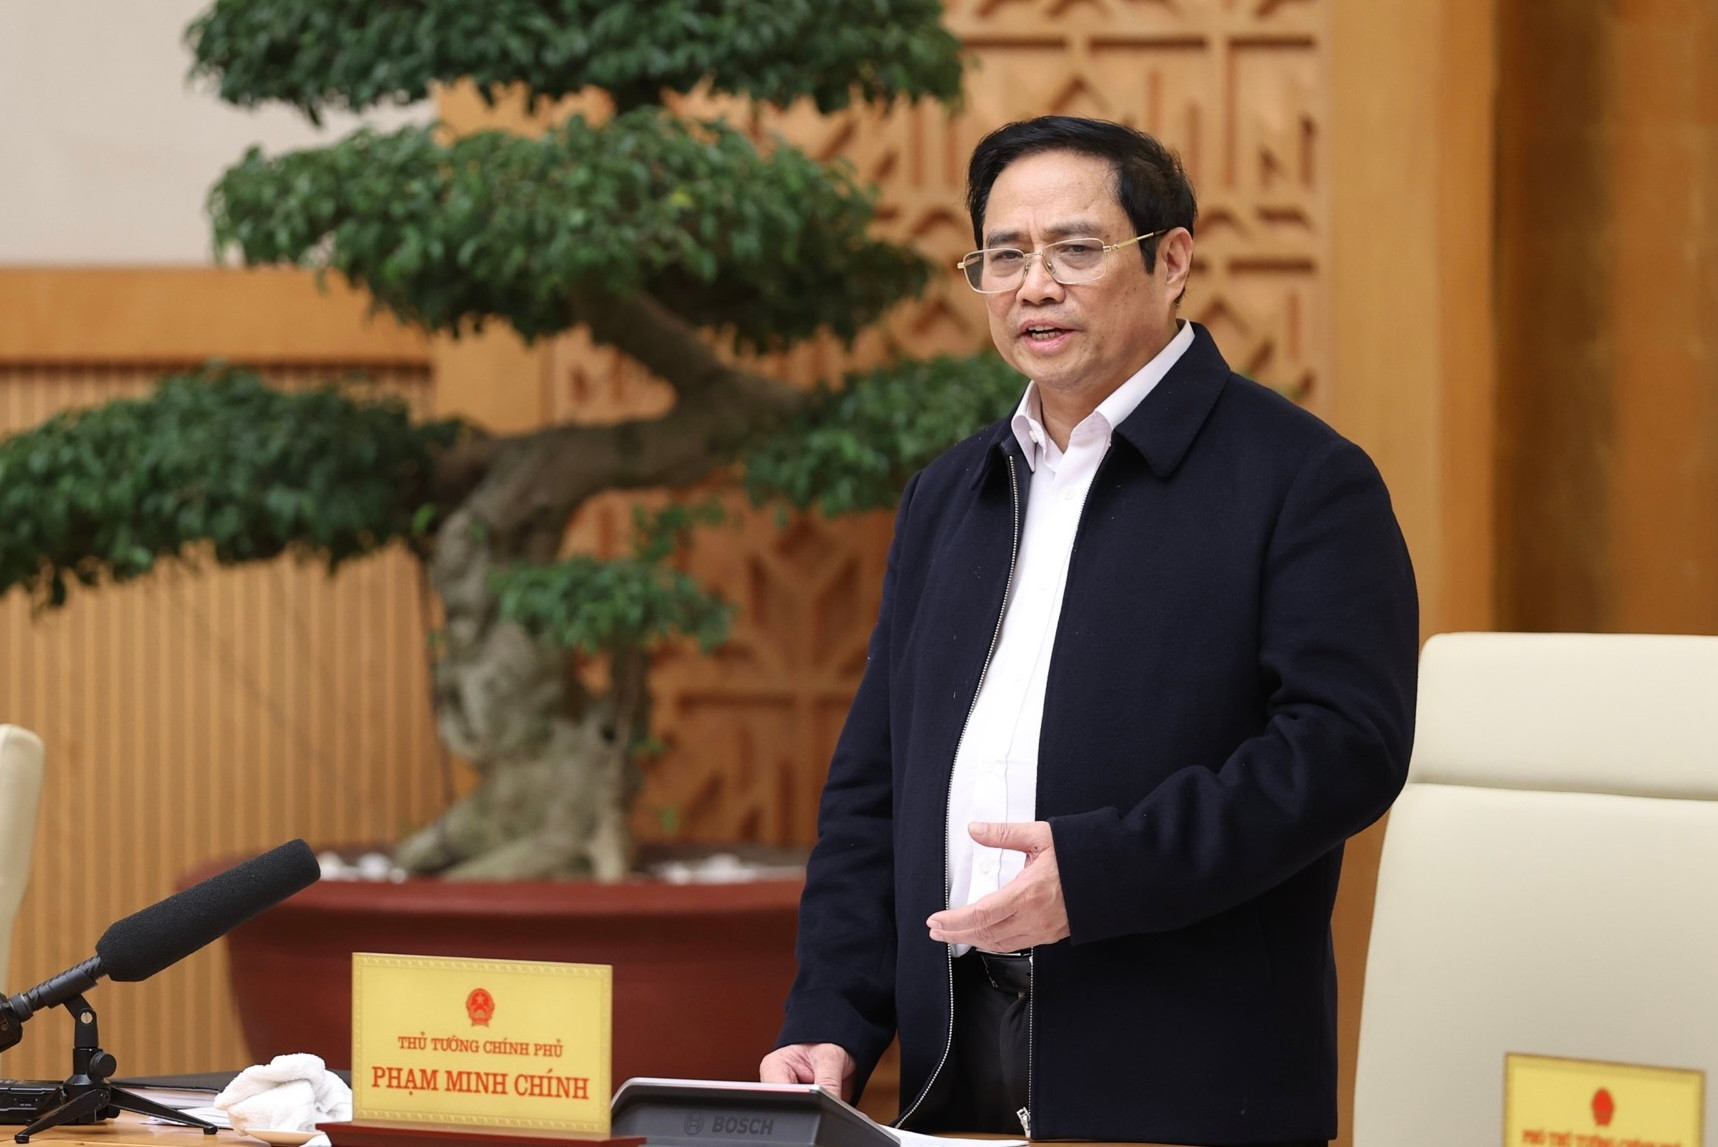 Thủ tướng Phạm Minh Chính: Triển khai các nhiệm vụ trọng tâm, trọng điểm, làm việc nào dứt việc đó - Ảnh 5.